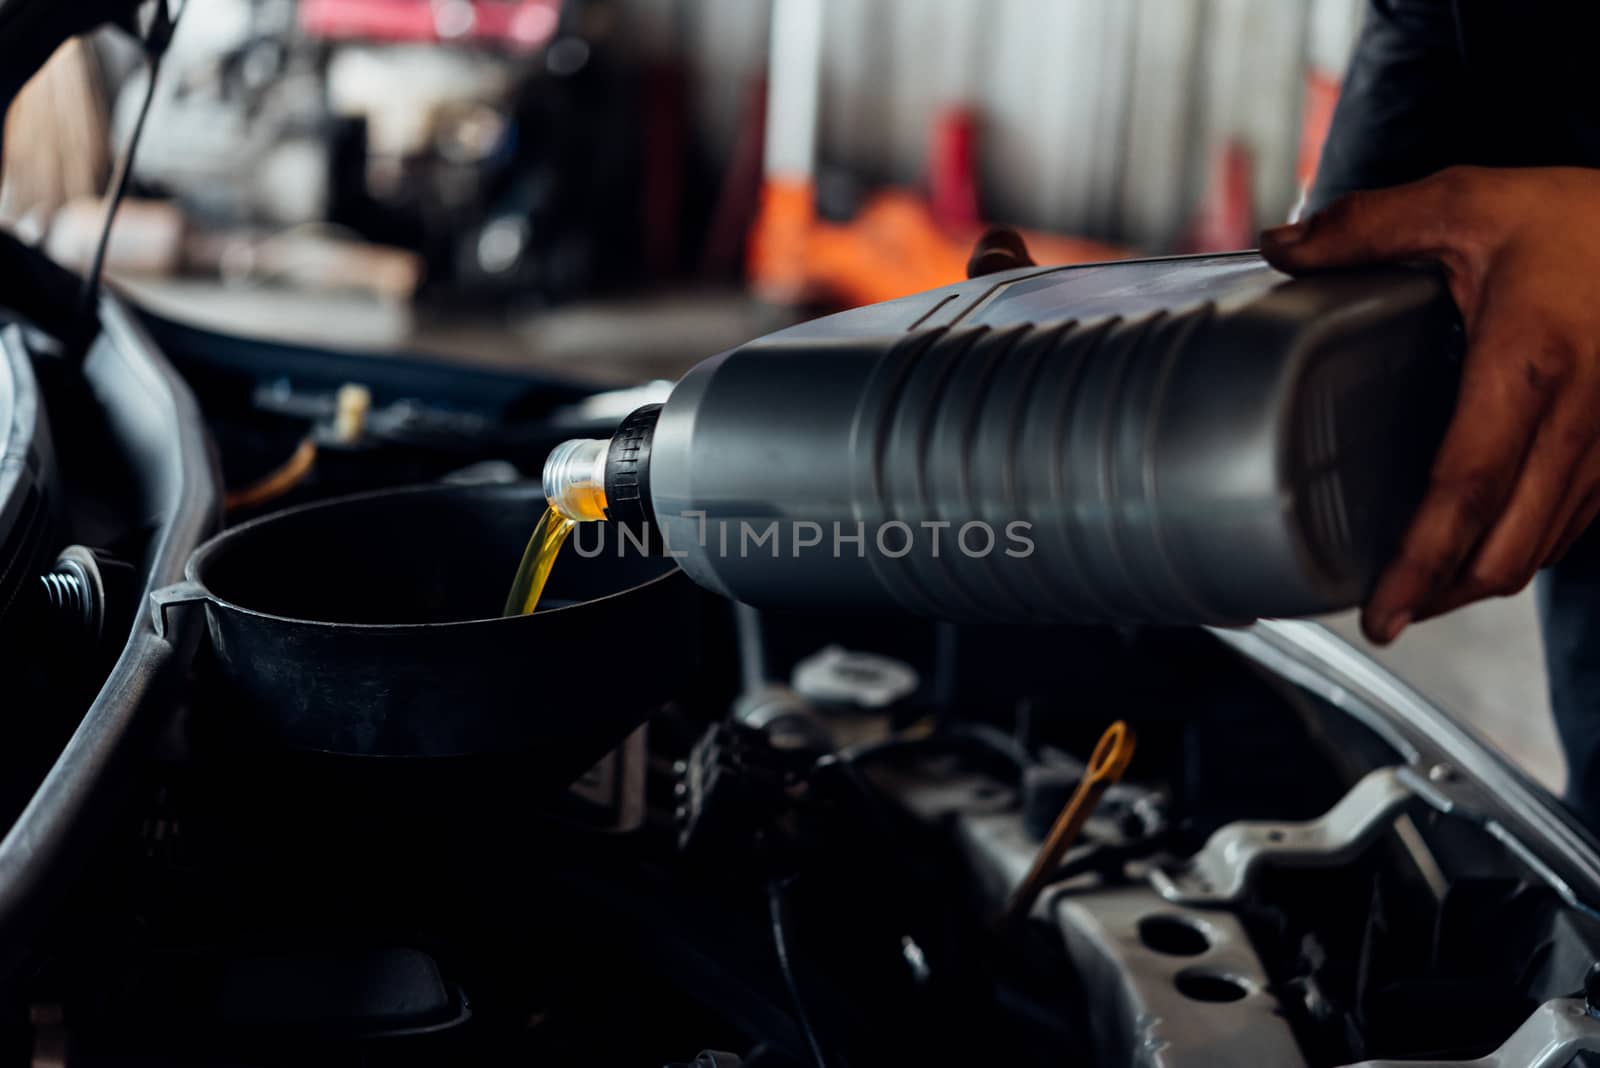 Car mechanic fills a fresh lubricant engine oil by PongMoji